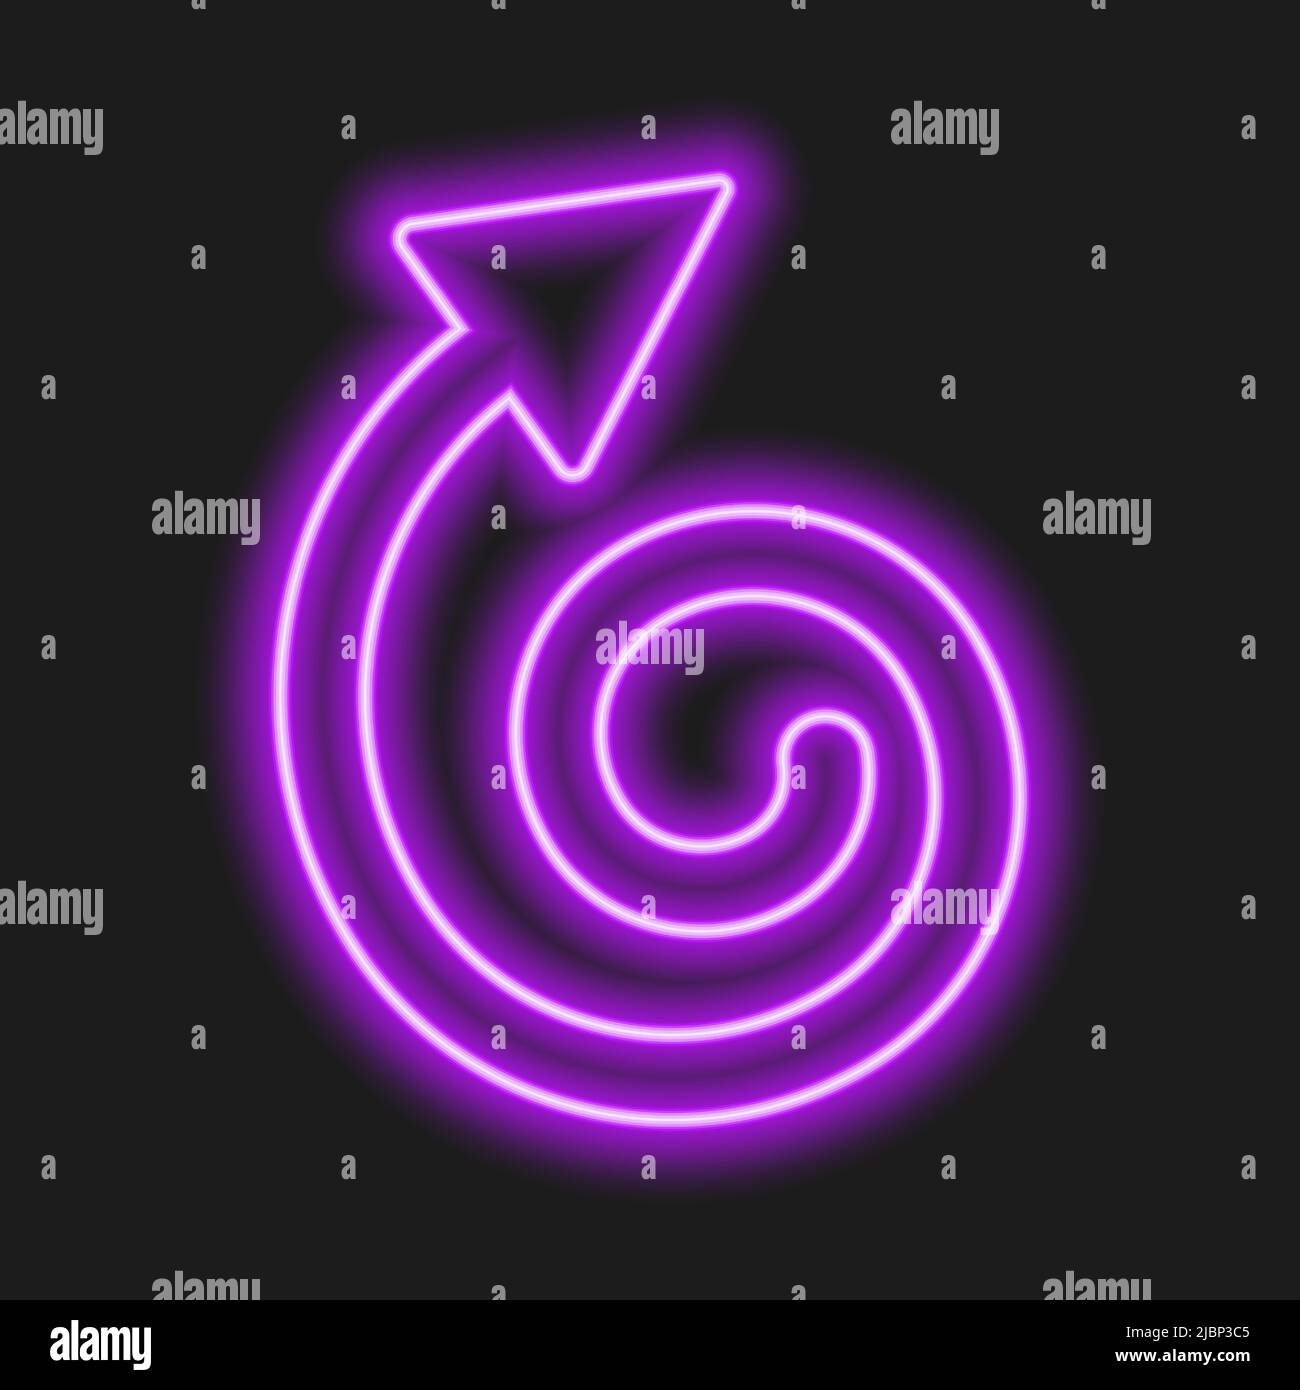 Leuchtender, violetter Neon-Wiederholpfeil auf dunklem Hintergrund. Symbol für Aktualisierung, Neustart, Austausch, Drehung. Vektor-realistische Darstellung. Stock Vektor